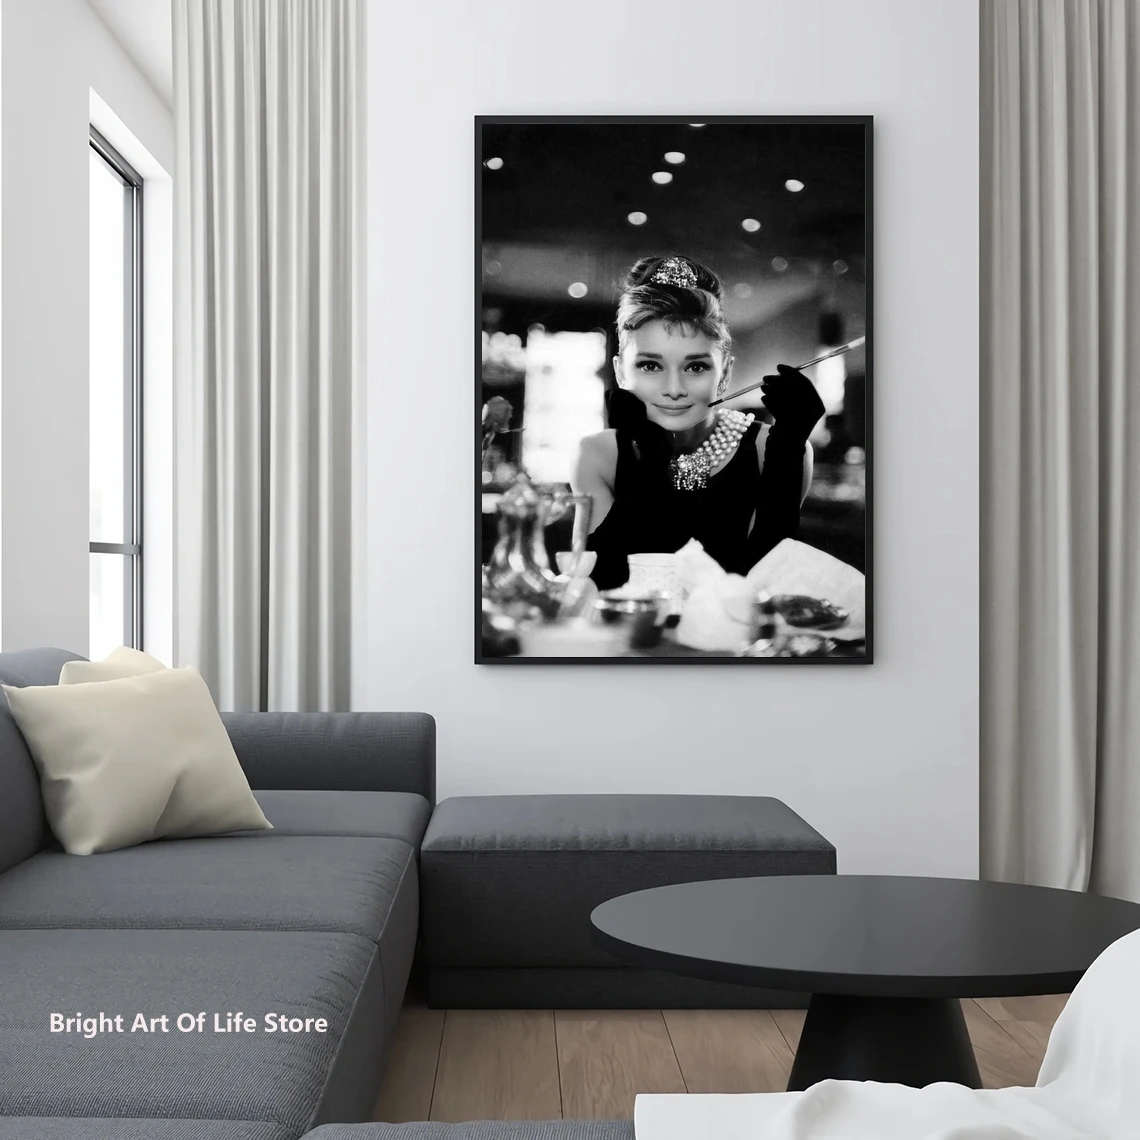 

Плакат Одри Хепберн «Завтрак у Тиффани», высококачественный принт, винтажная художественная фотография, домашний декор, настенное искусство, модная красота